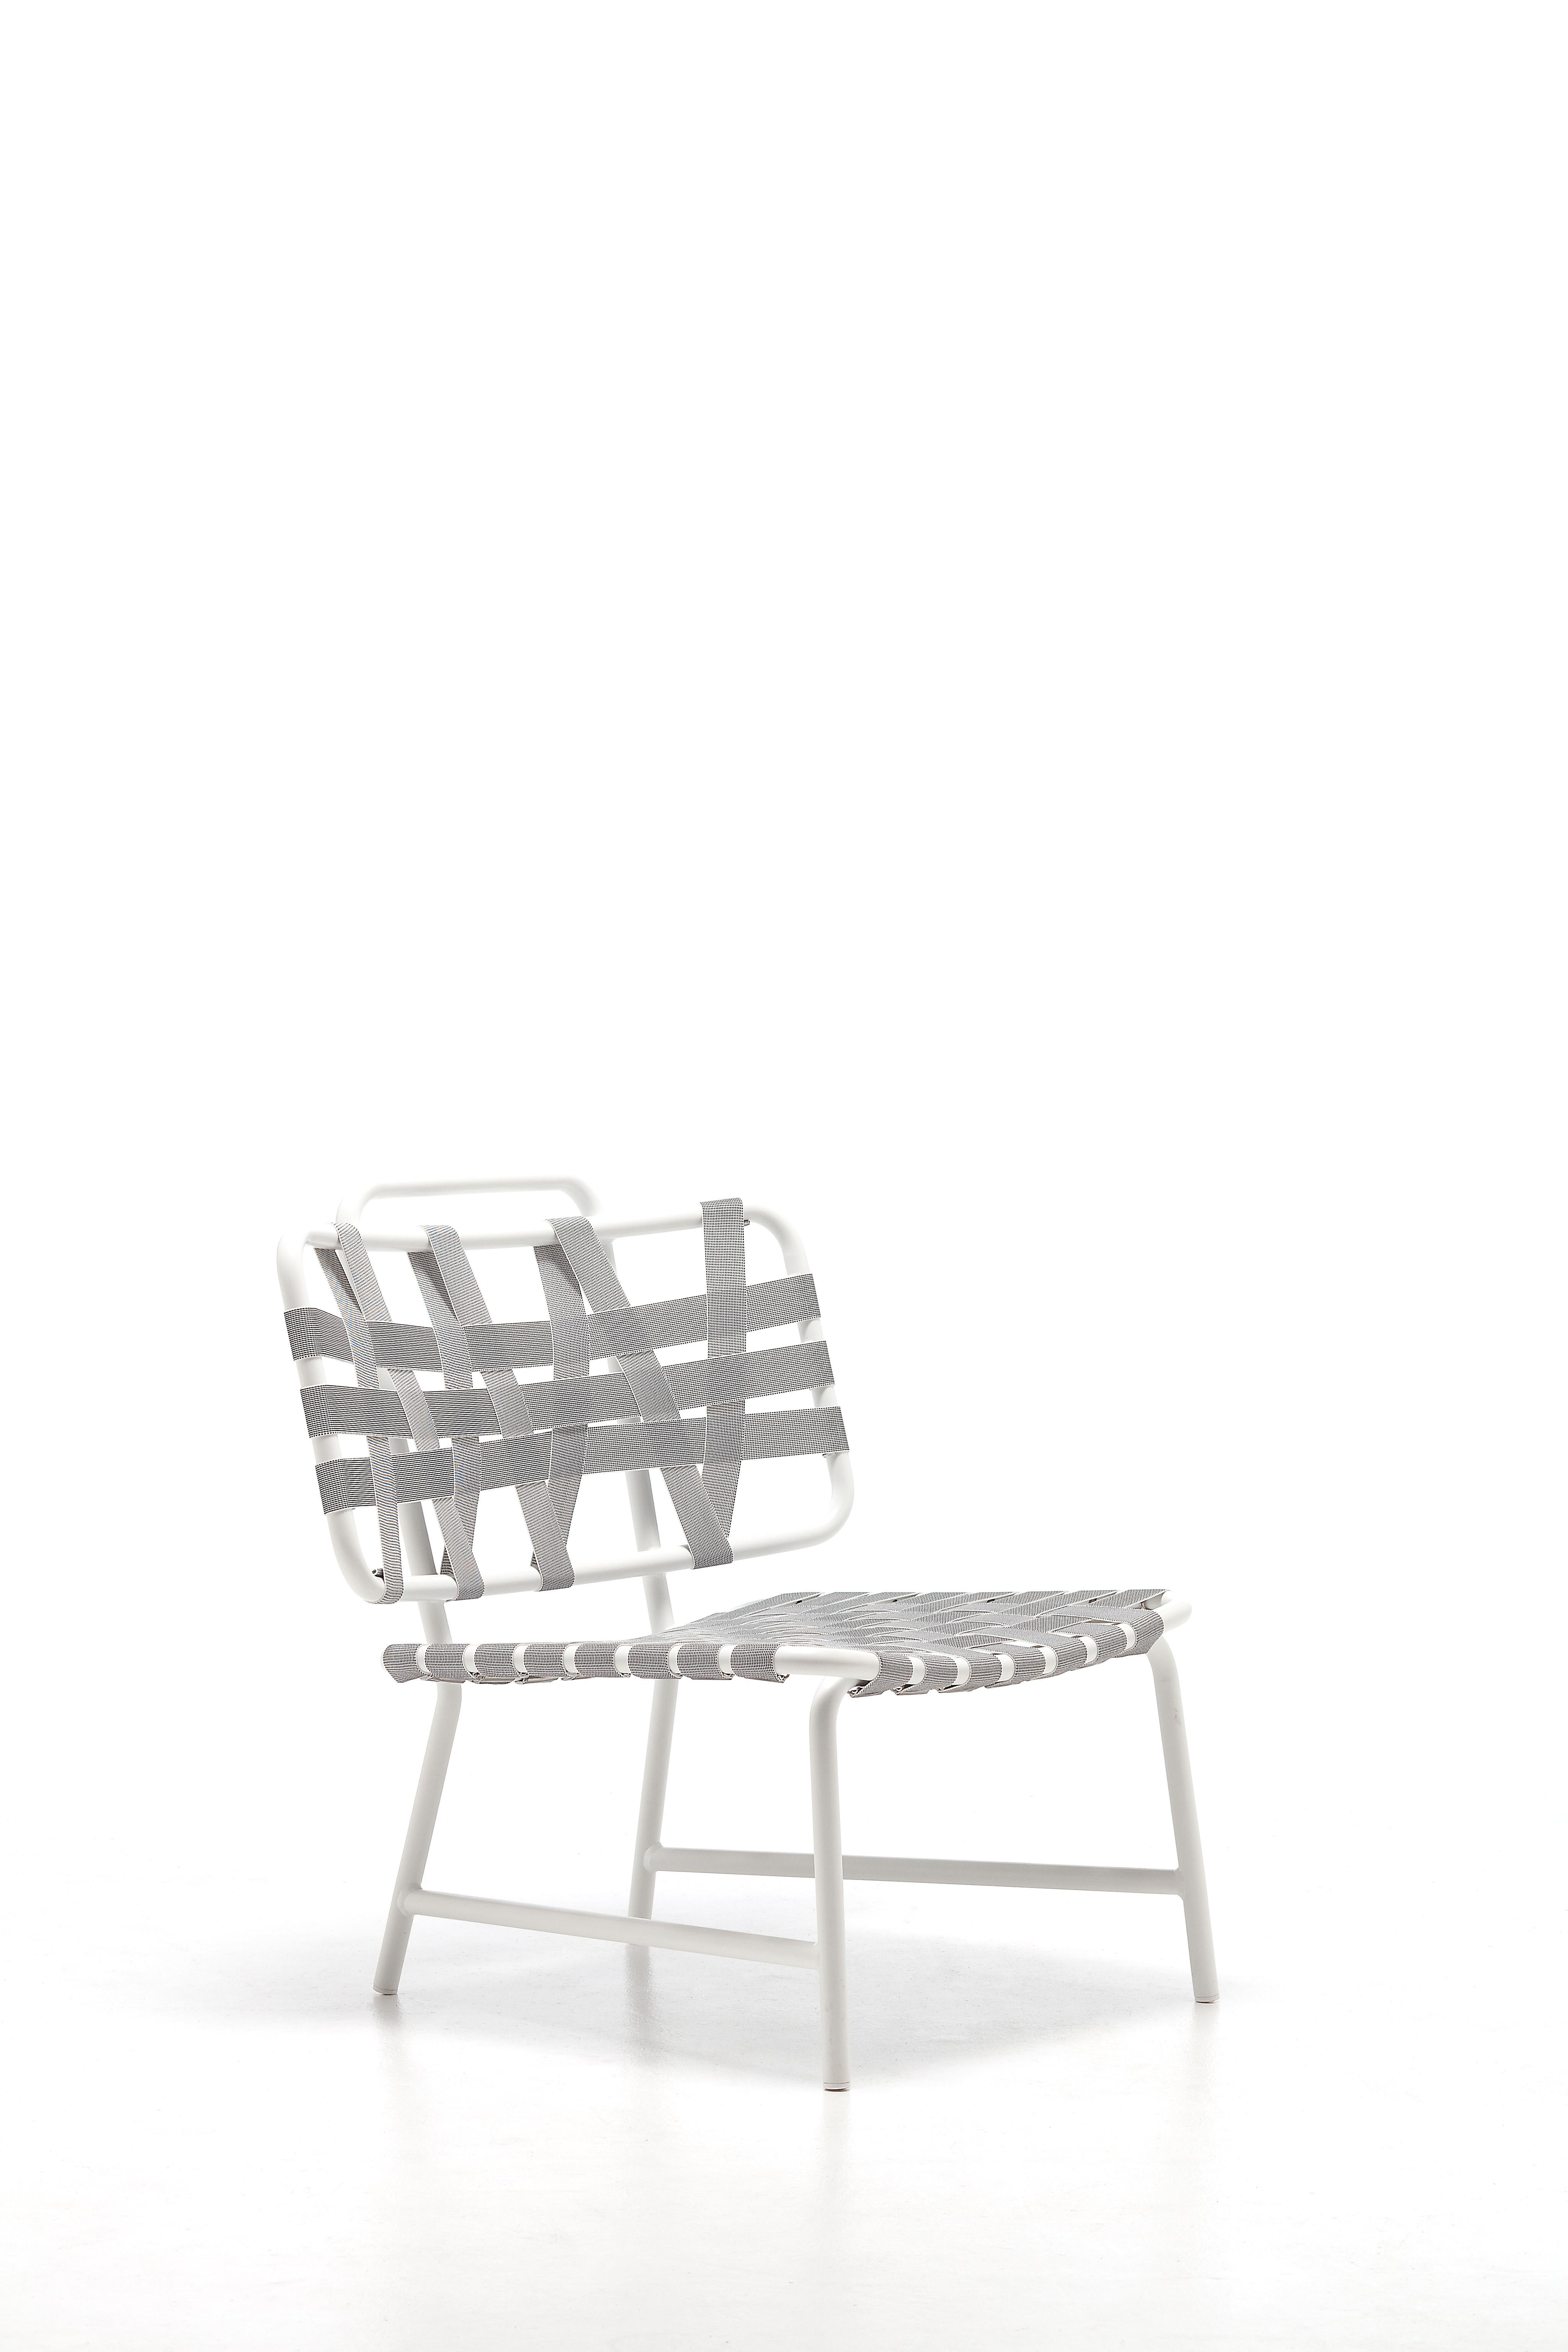 Définie par une large assise au dossier légèrement incurvé pour un élément d'ameublement enveloppant, la chaise longue Inout 856 se développe autour d'une structure légère en aluminium tubulaire laqué blanc, gris ou sauge, un matériau écologique,